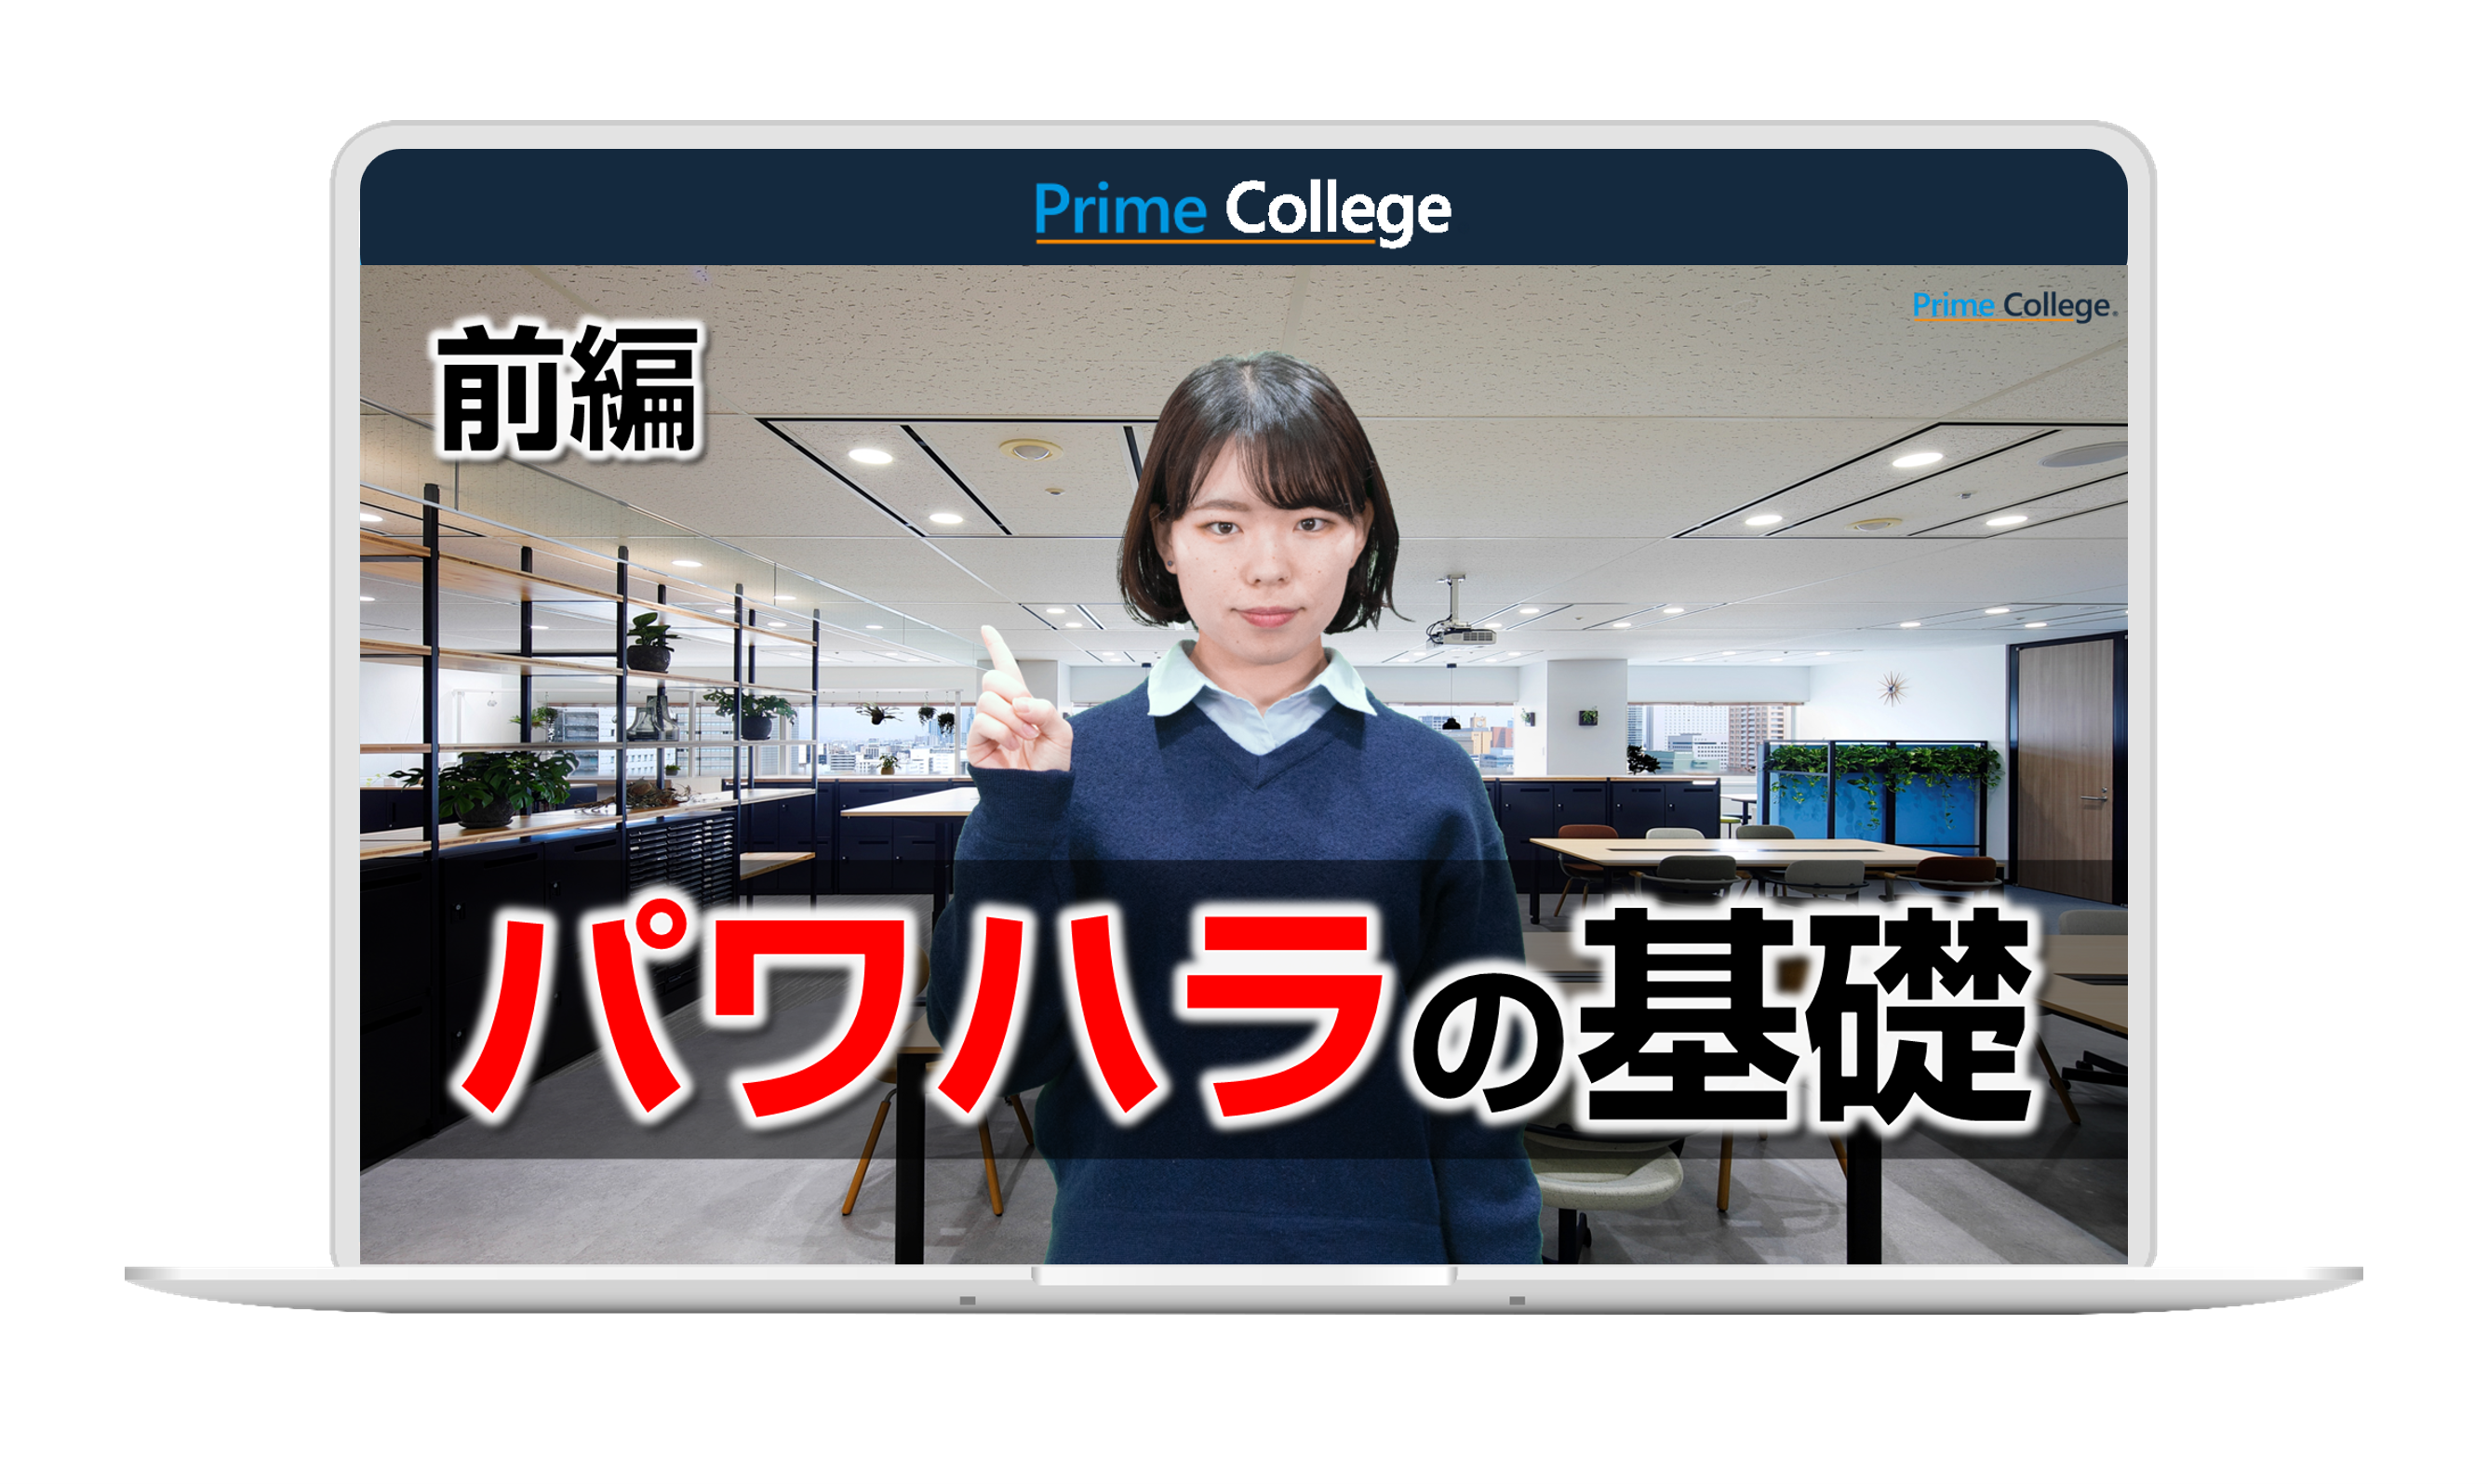 動画教育サービス『Prime College』のコンテンツに新たなシリーズが追加されます